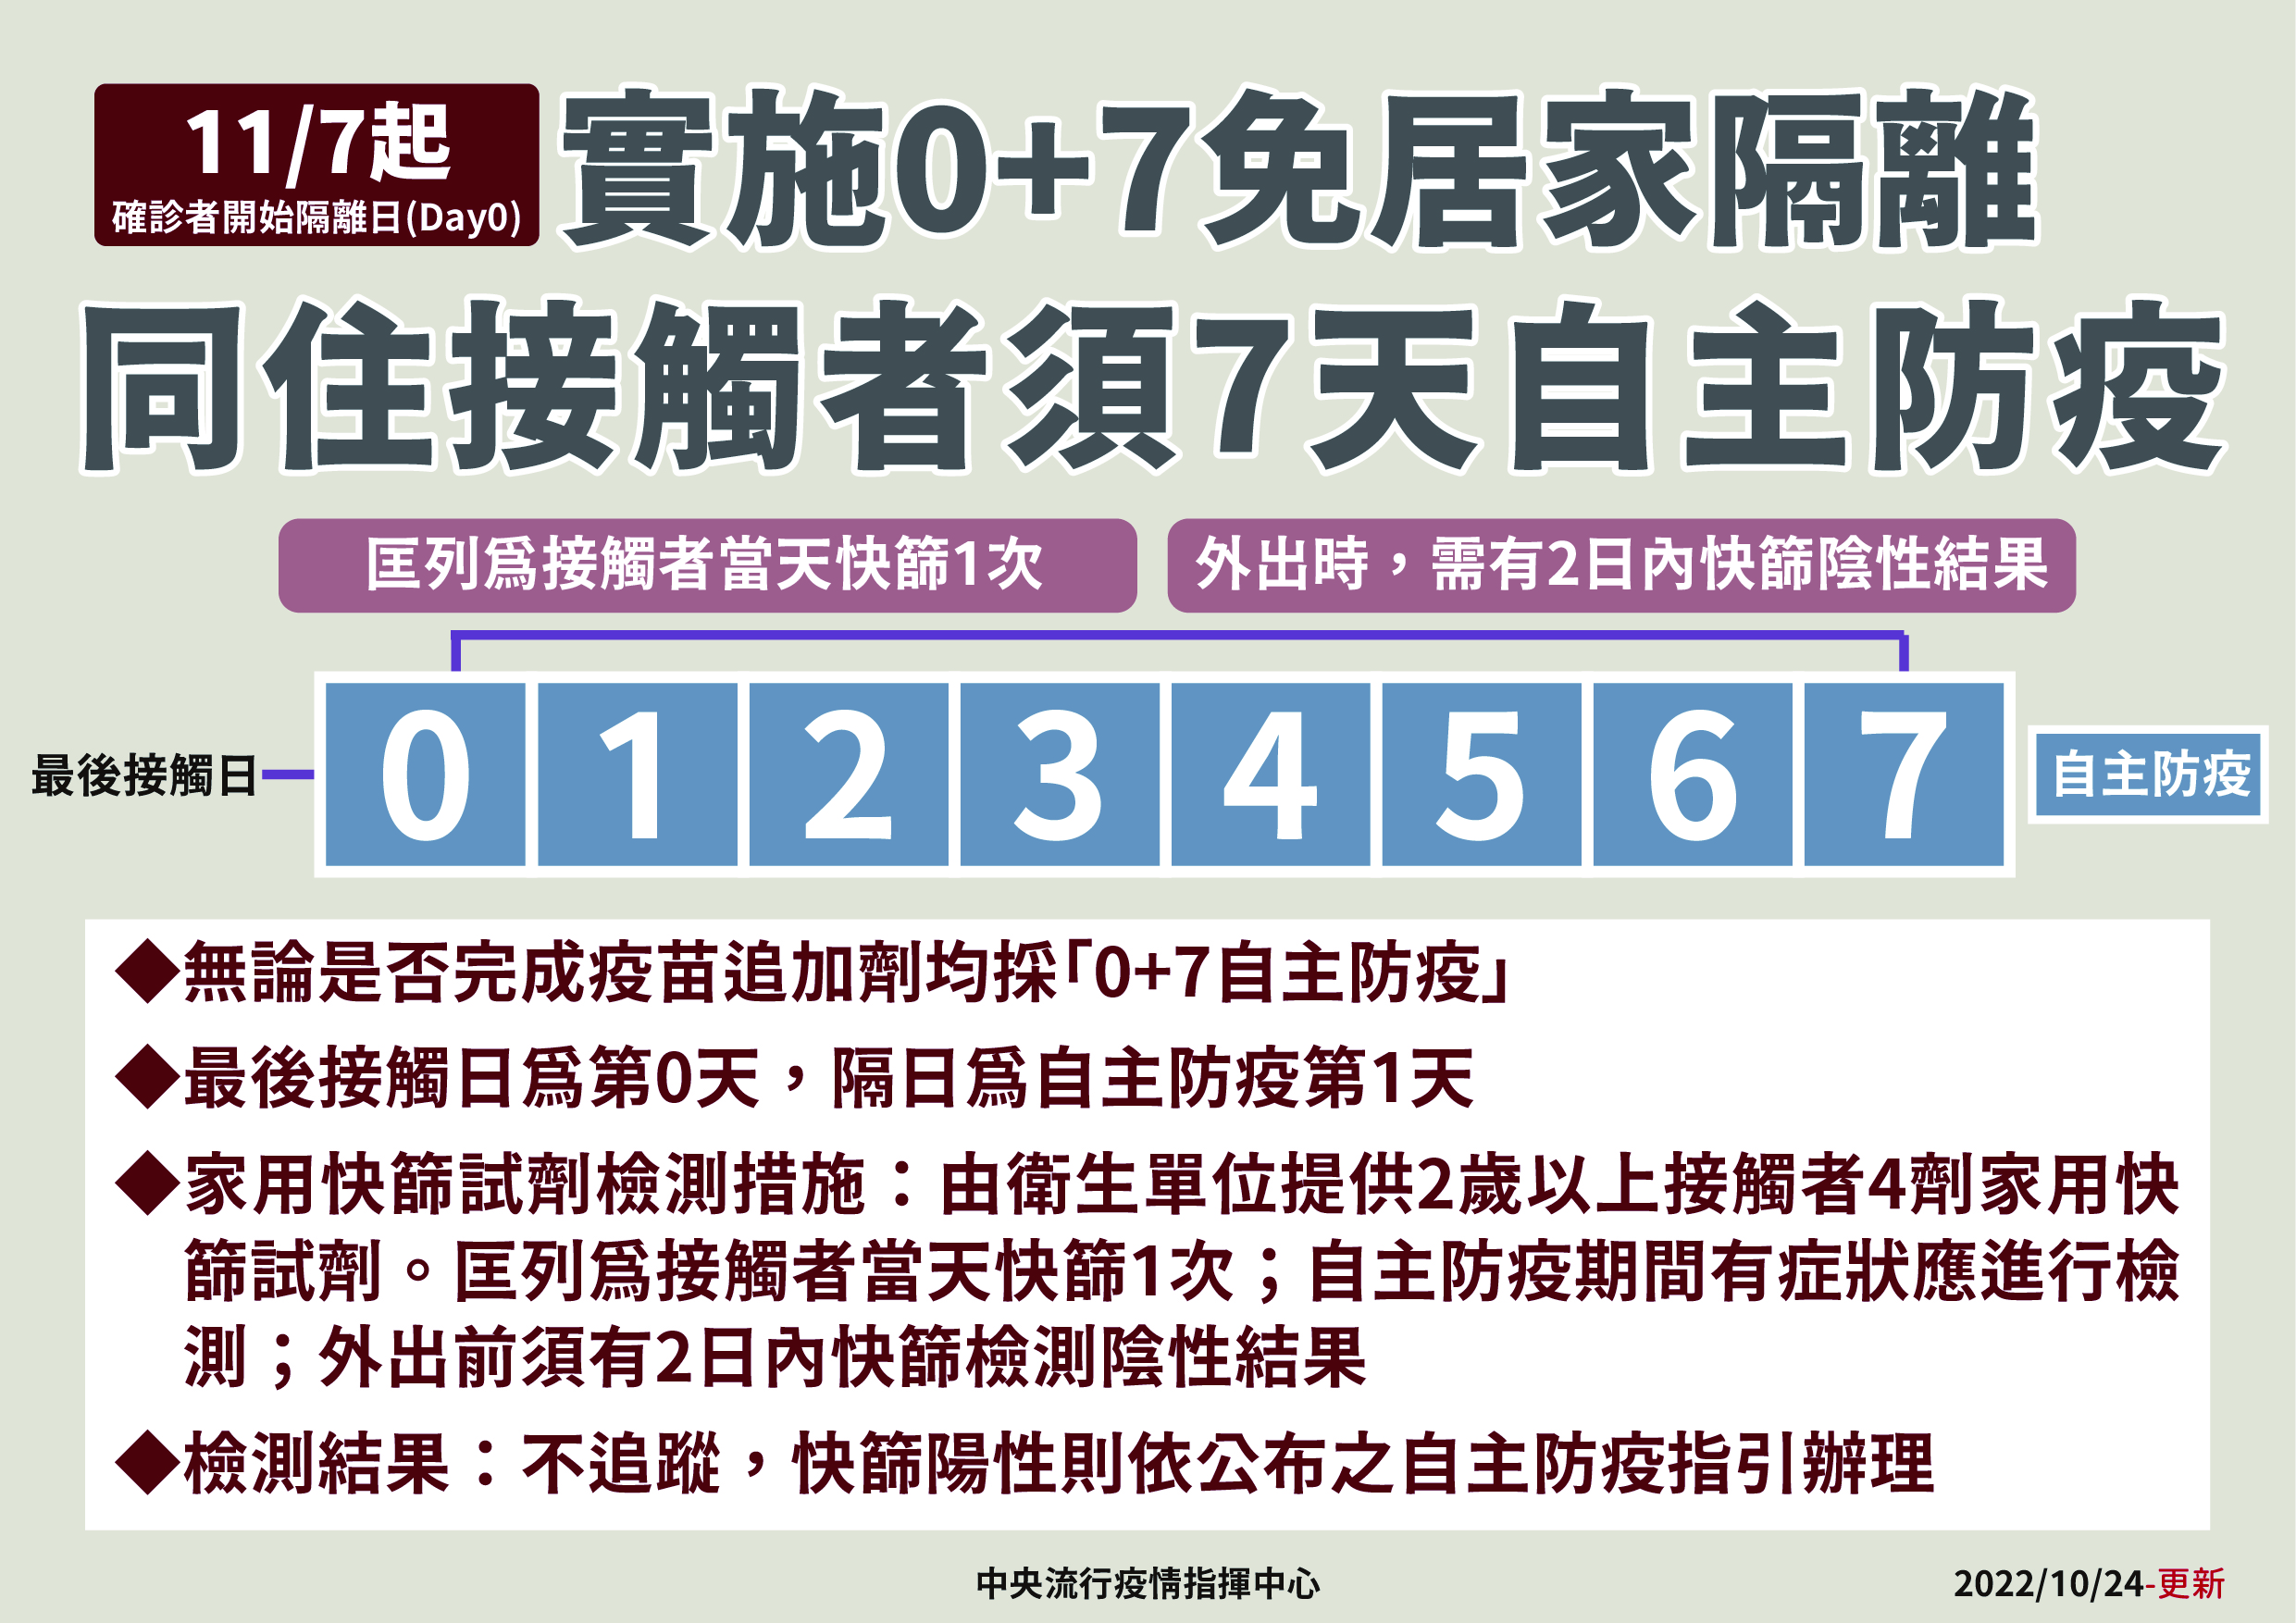 11月7日起接觸者實施0+7免居家隔離-中文.jpg